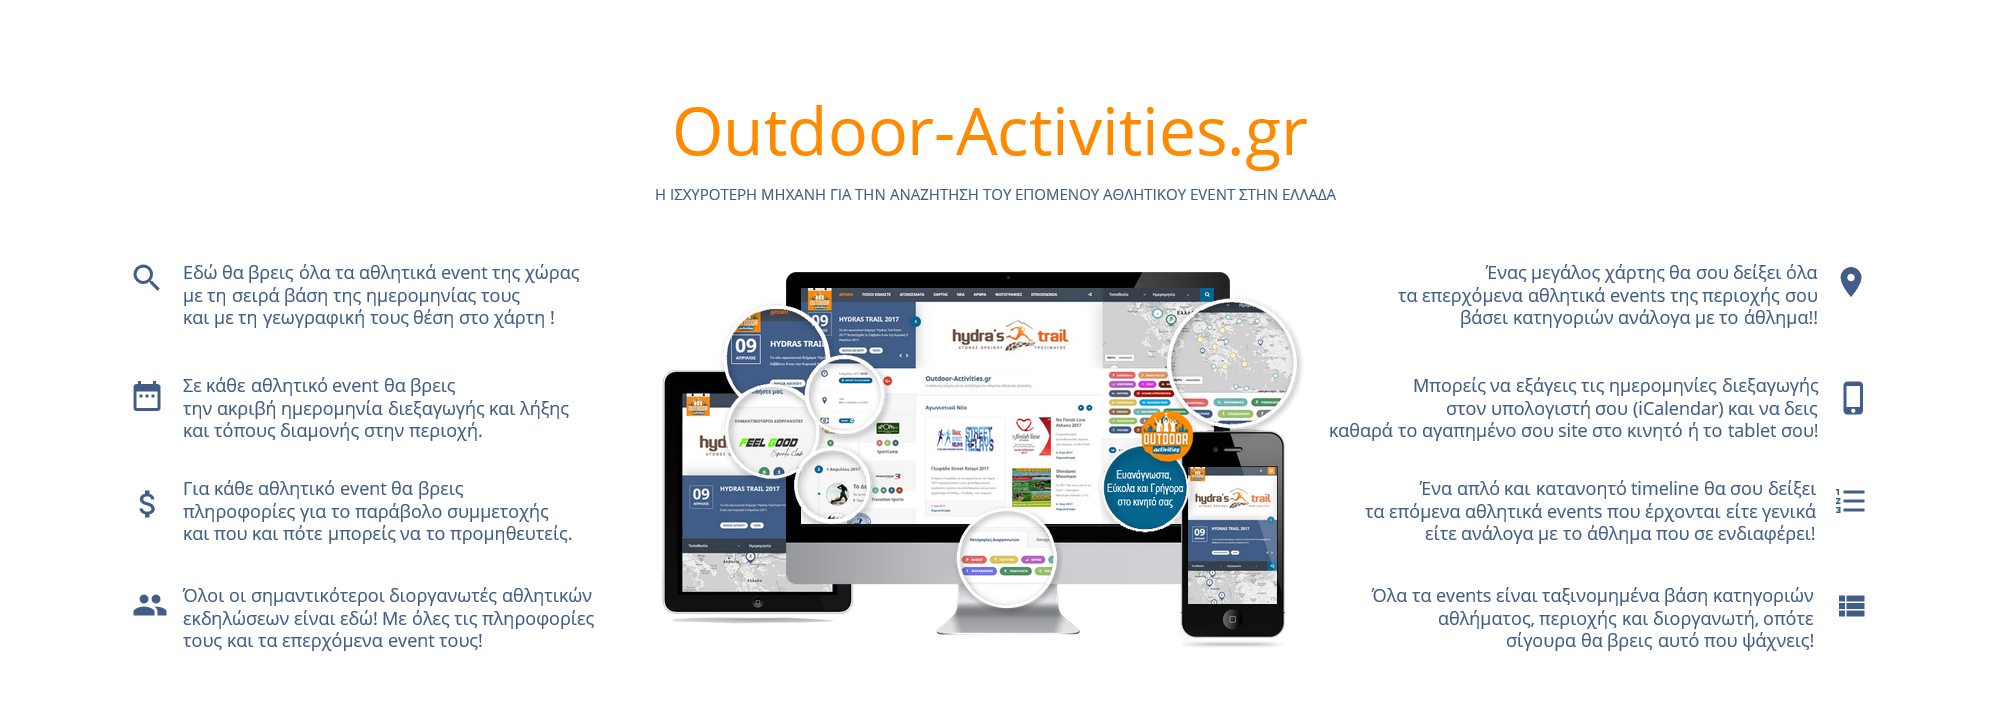 Outdoor-Activities - Παροχες